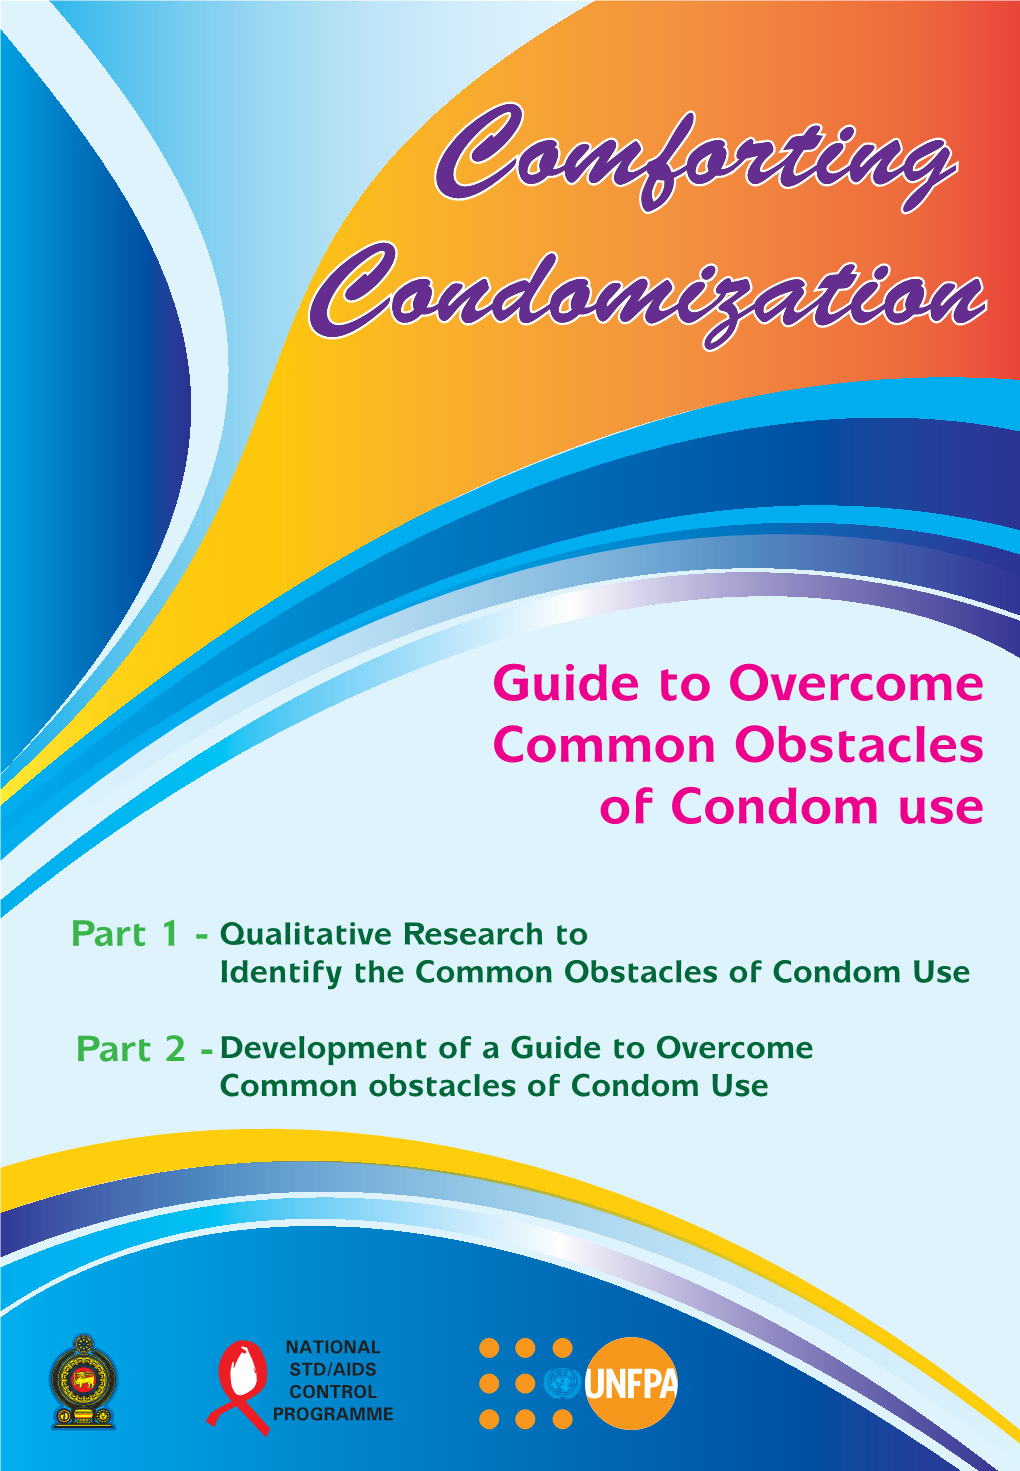 Conforting Condomization